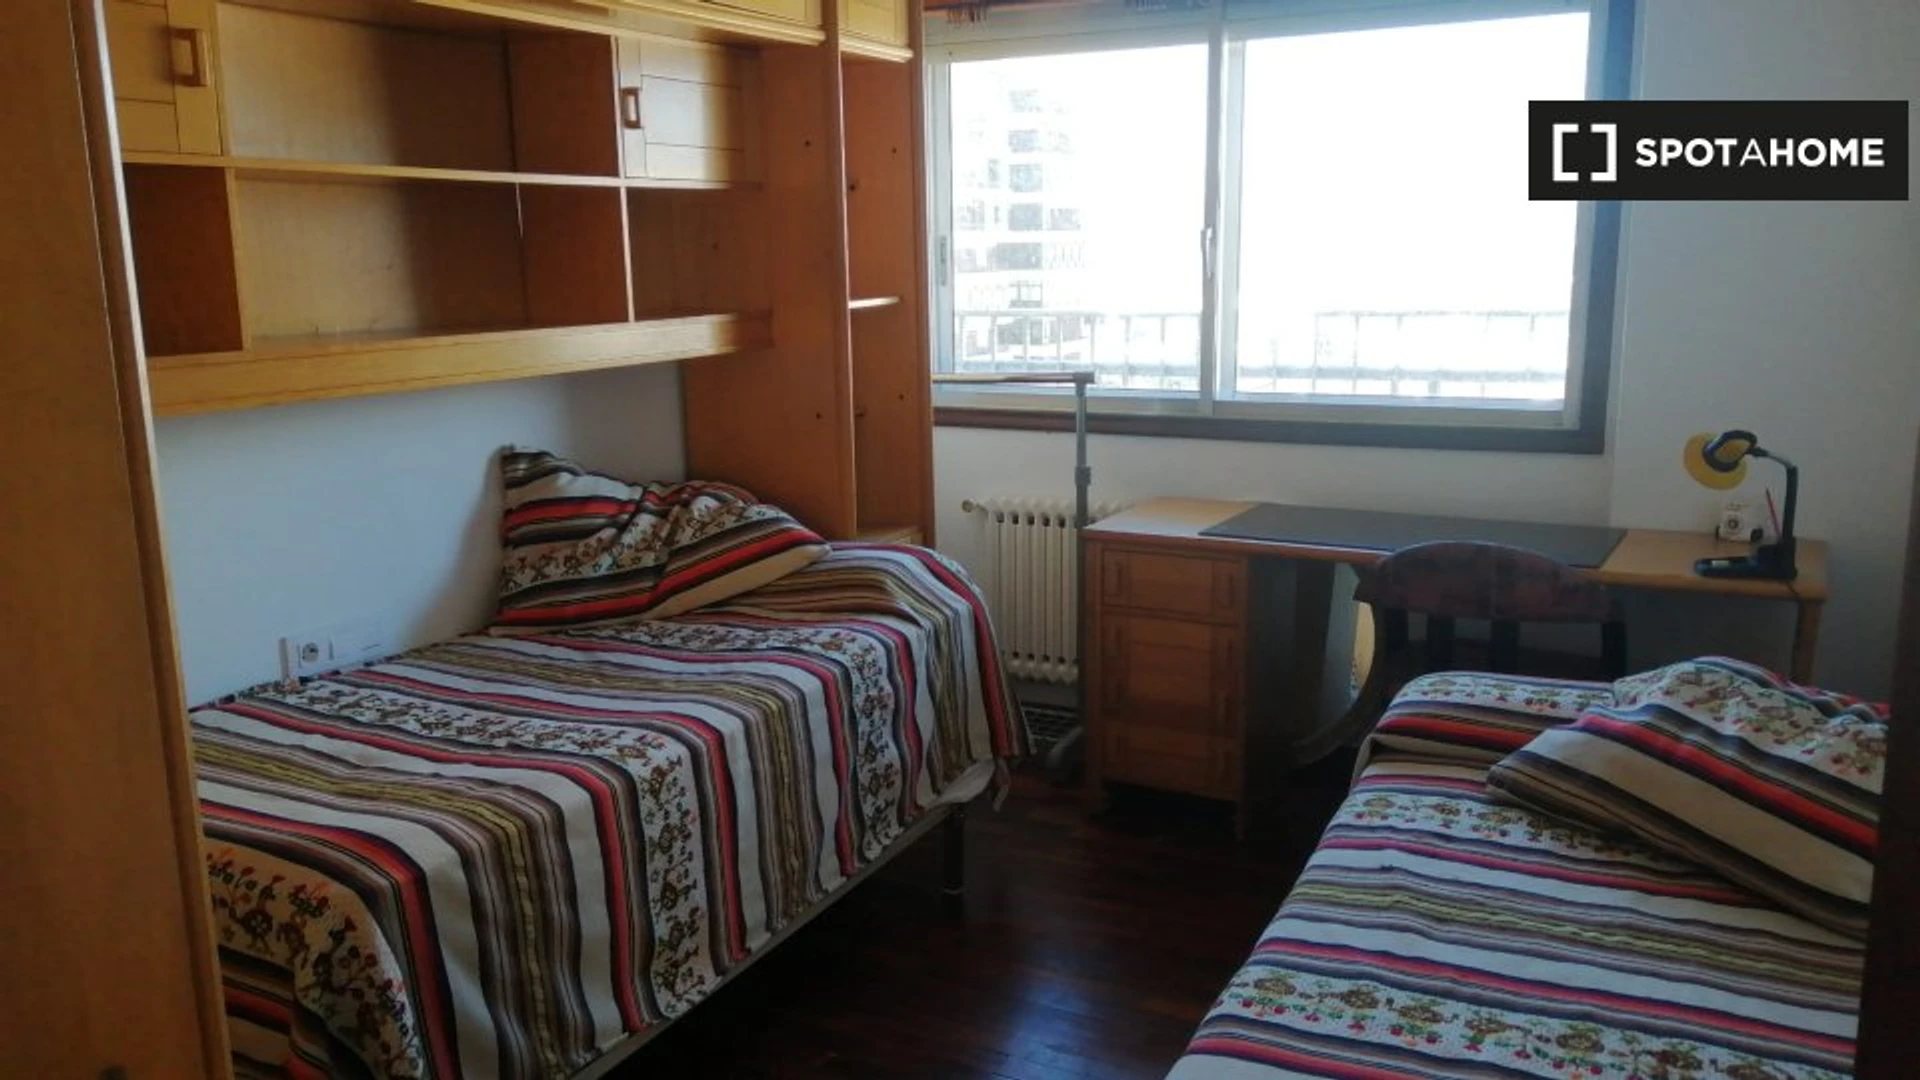 Vigo içinde 3 yatak odalı konaklama